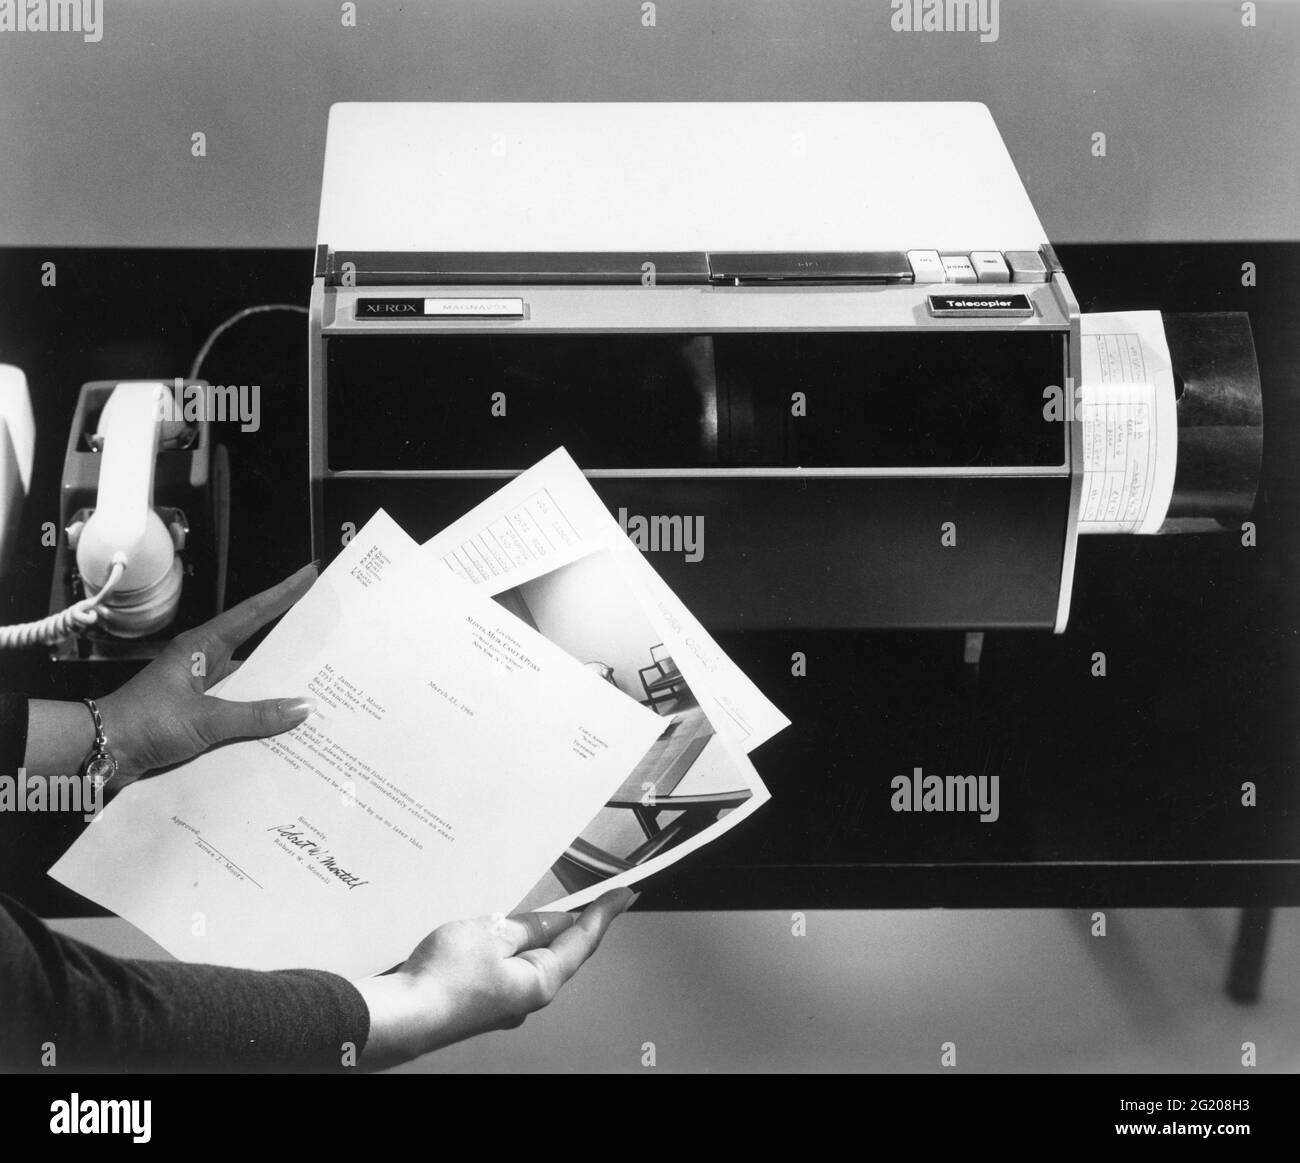 Une nouvelle machine de bureau - le Xerox Magnafax Telecopier - peut regarder une image ou une lettre et convertir l'image en son par téléphone. À l'autre extrémité du téléphone de réception, un appareil similaire reconvertit le son en image quelques minutes plus tard, Rochester, NY, 1966. (Images anciennes Xerox/RBM) Banque D'Images